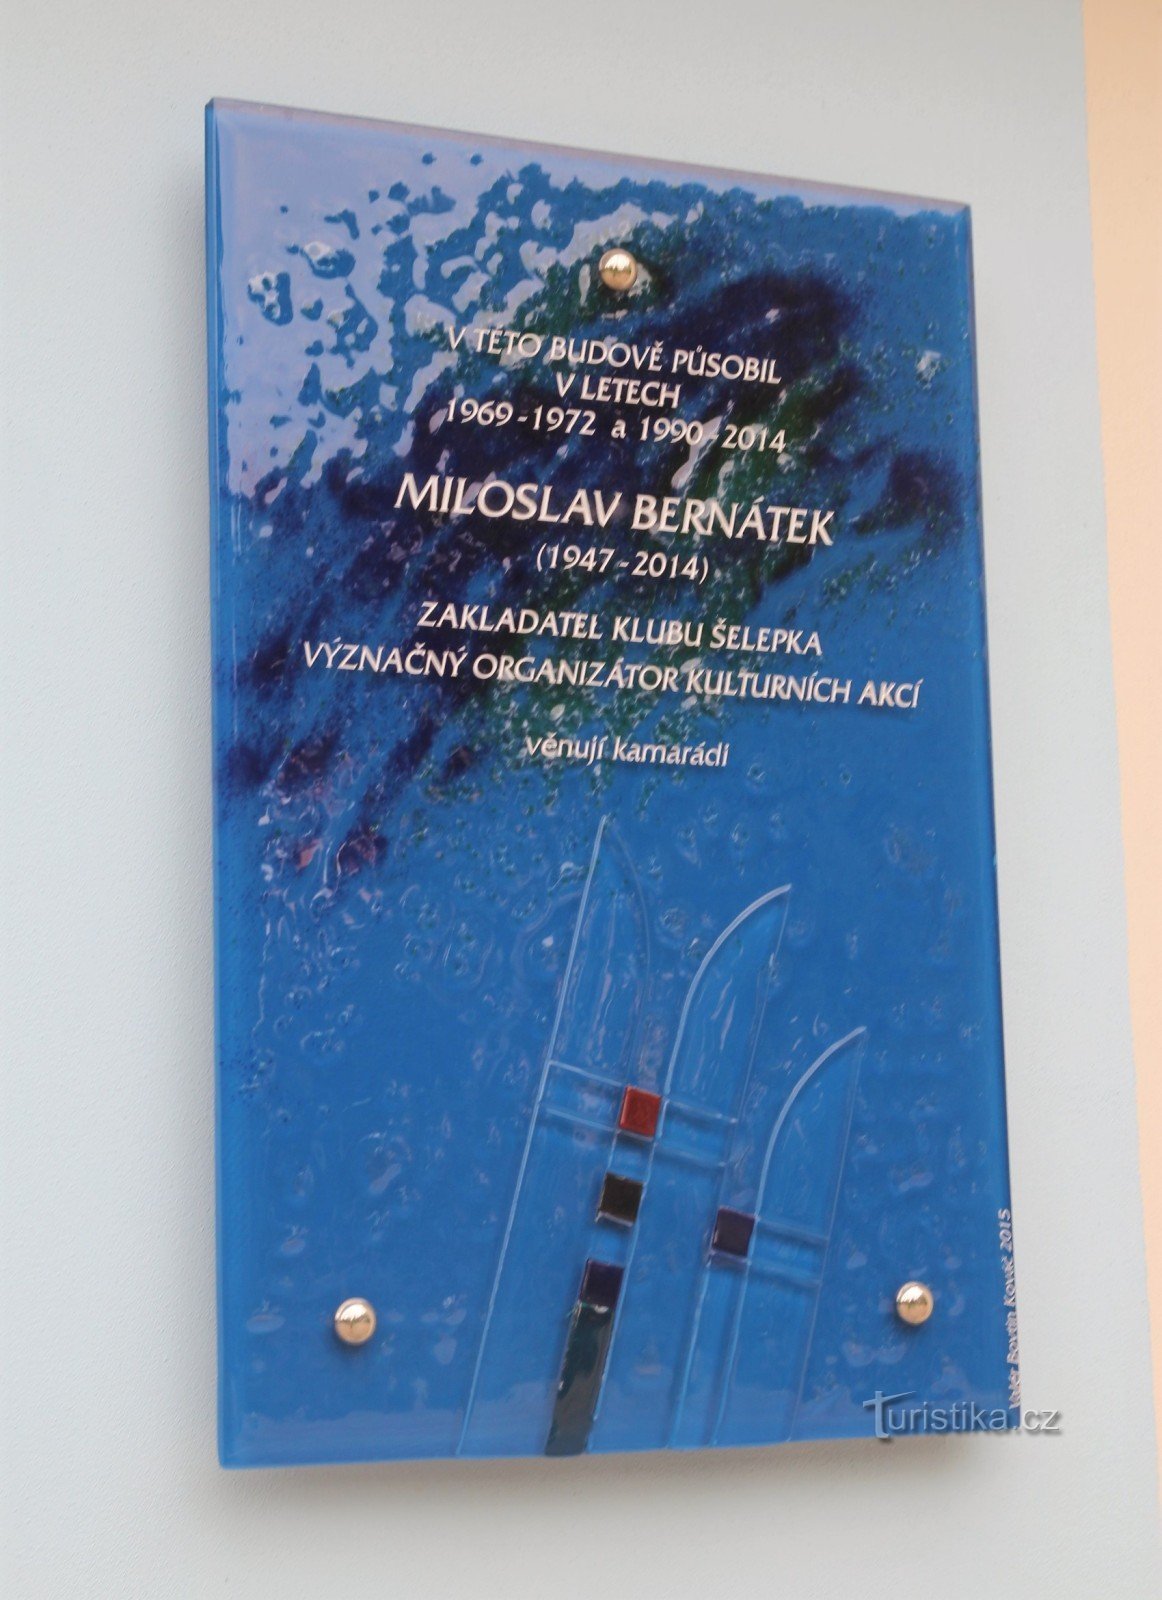 Brno-Ponava - memorial plaque of Miloš Bernátek